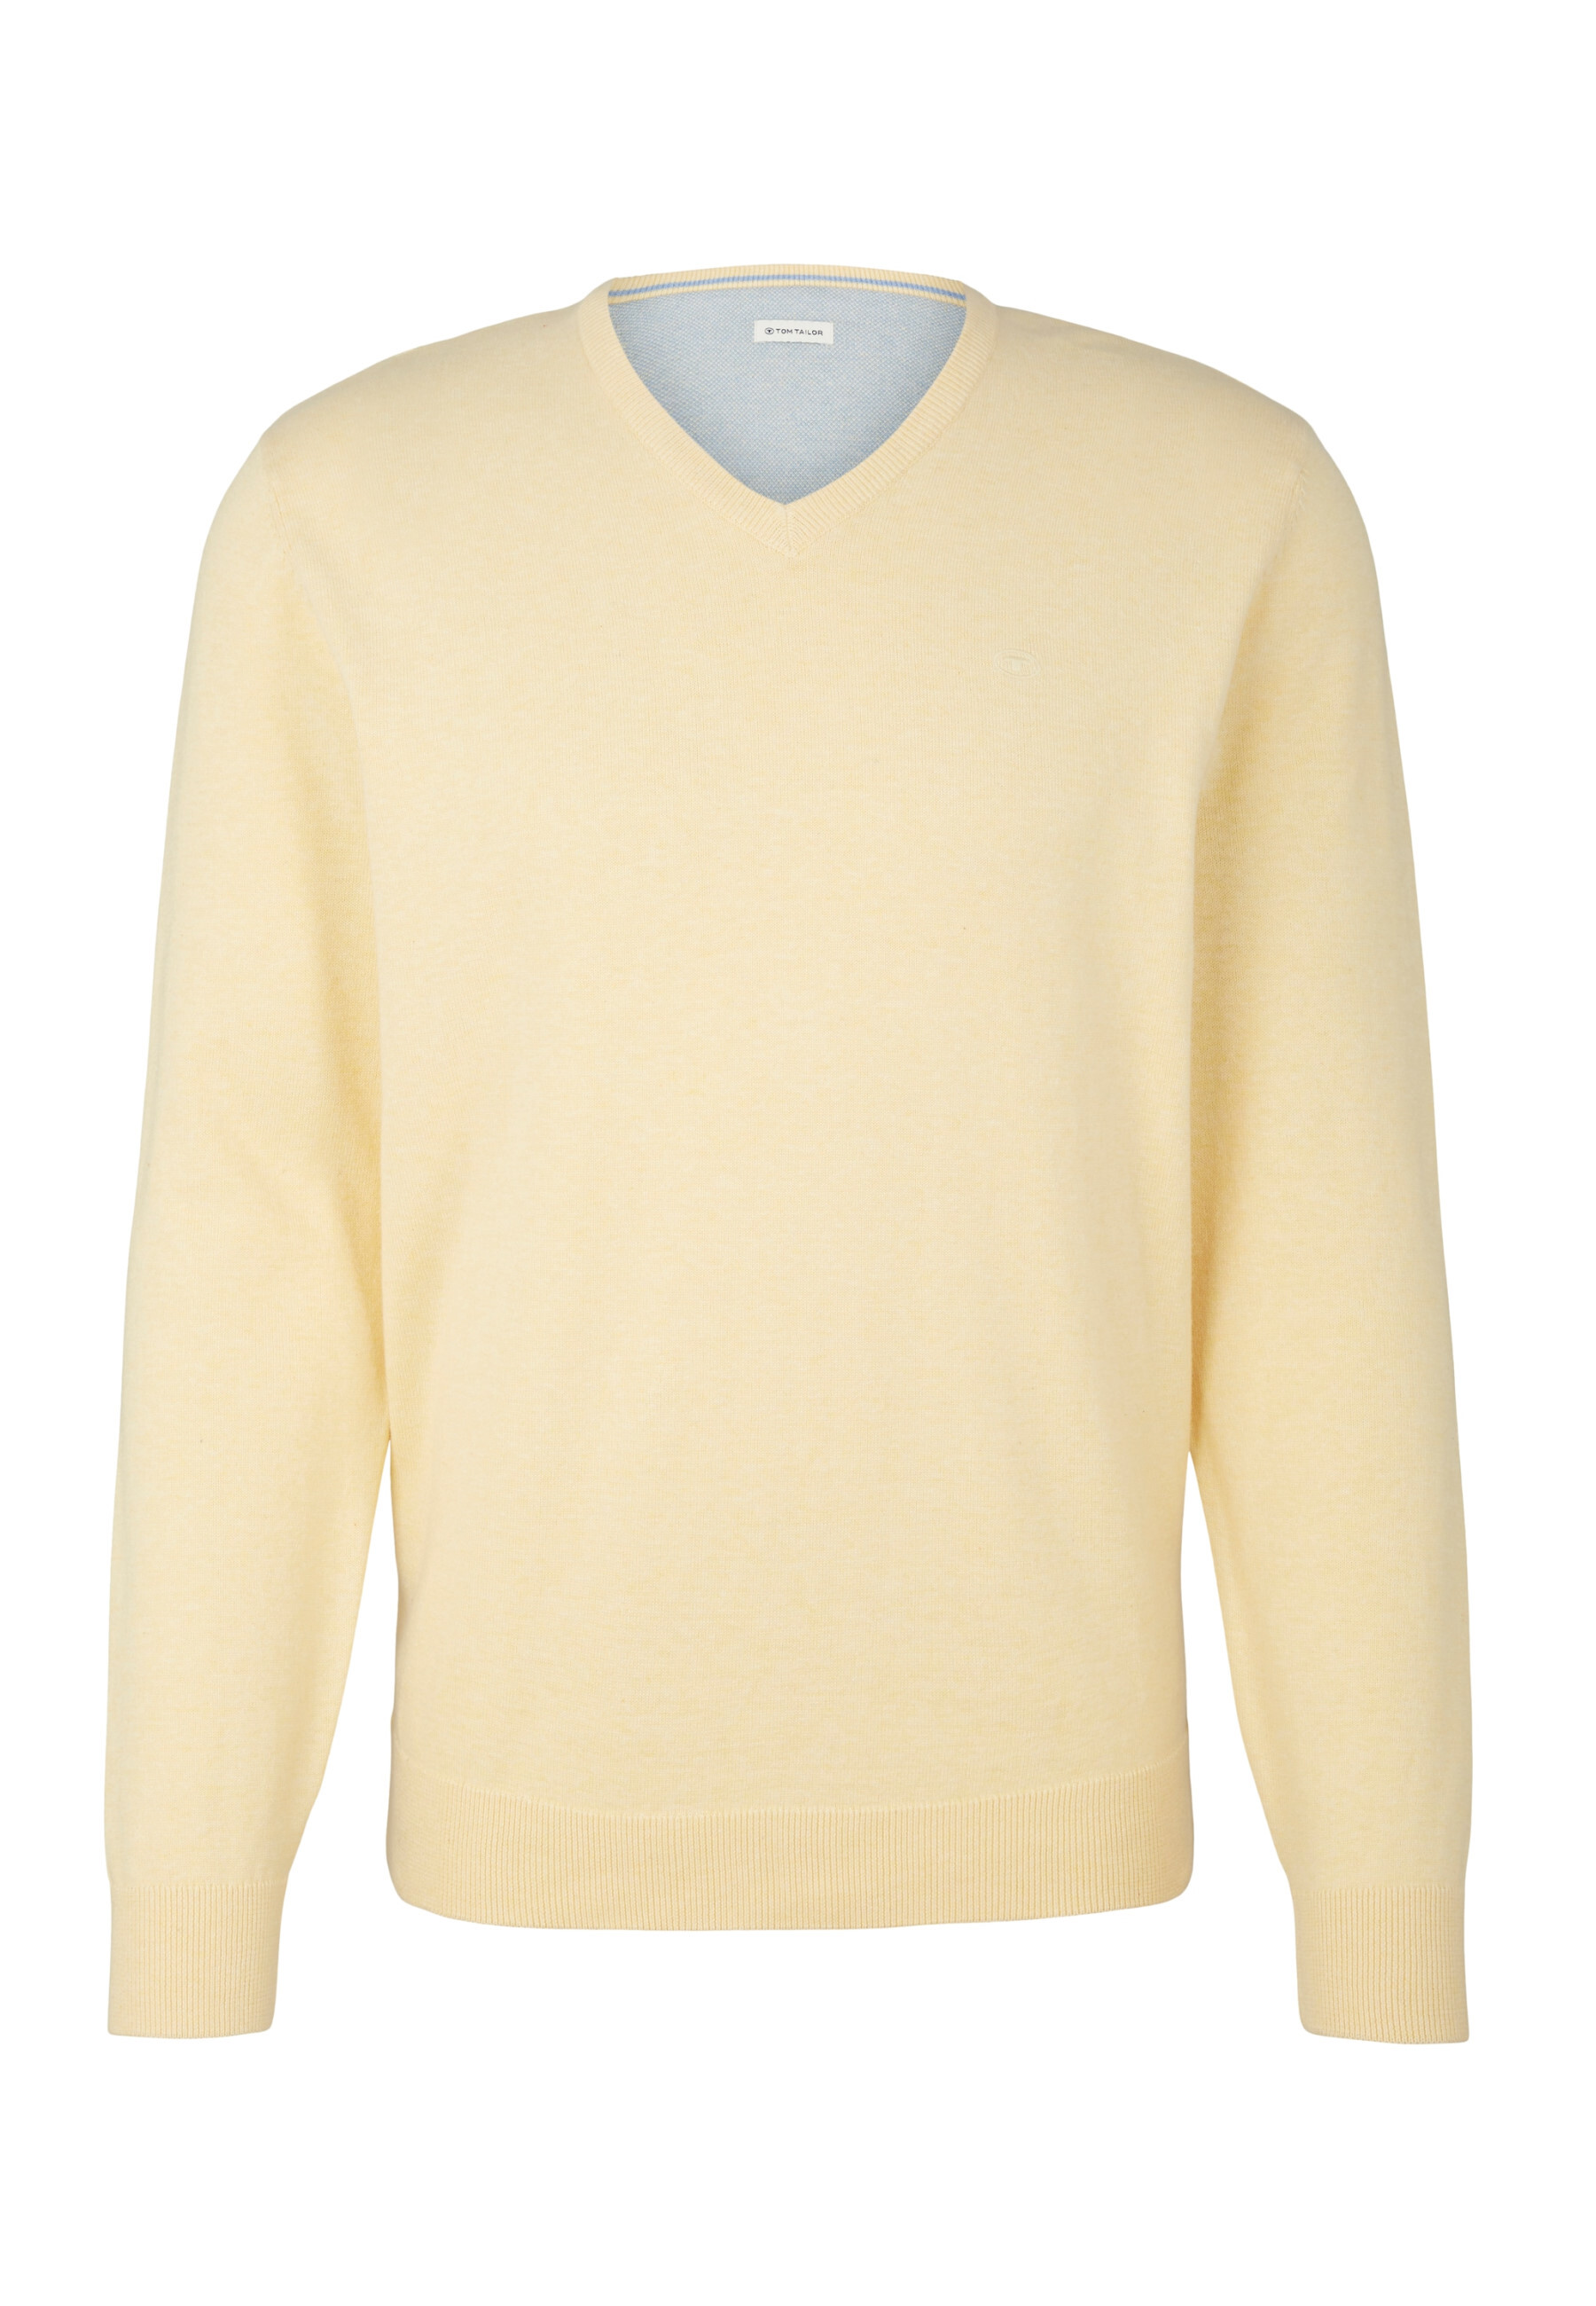 Пуловер Tom Tailor, желтый пуловер tom tailor красный